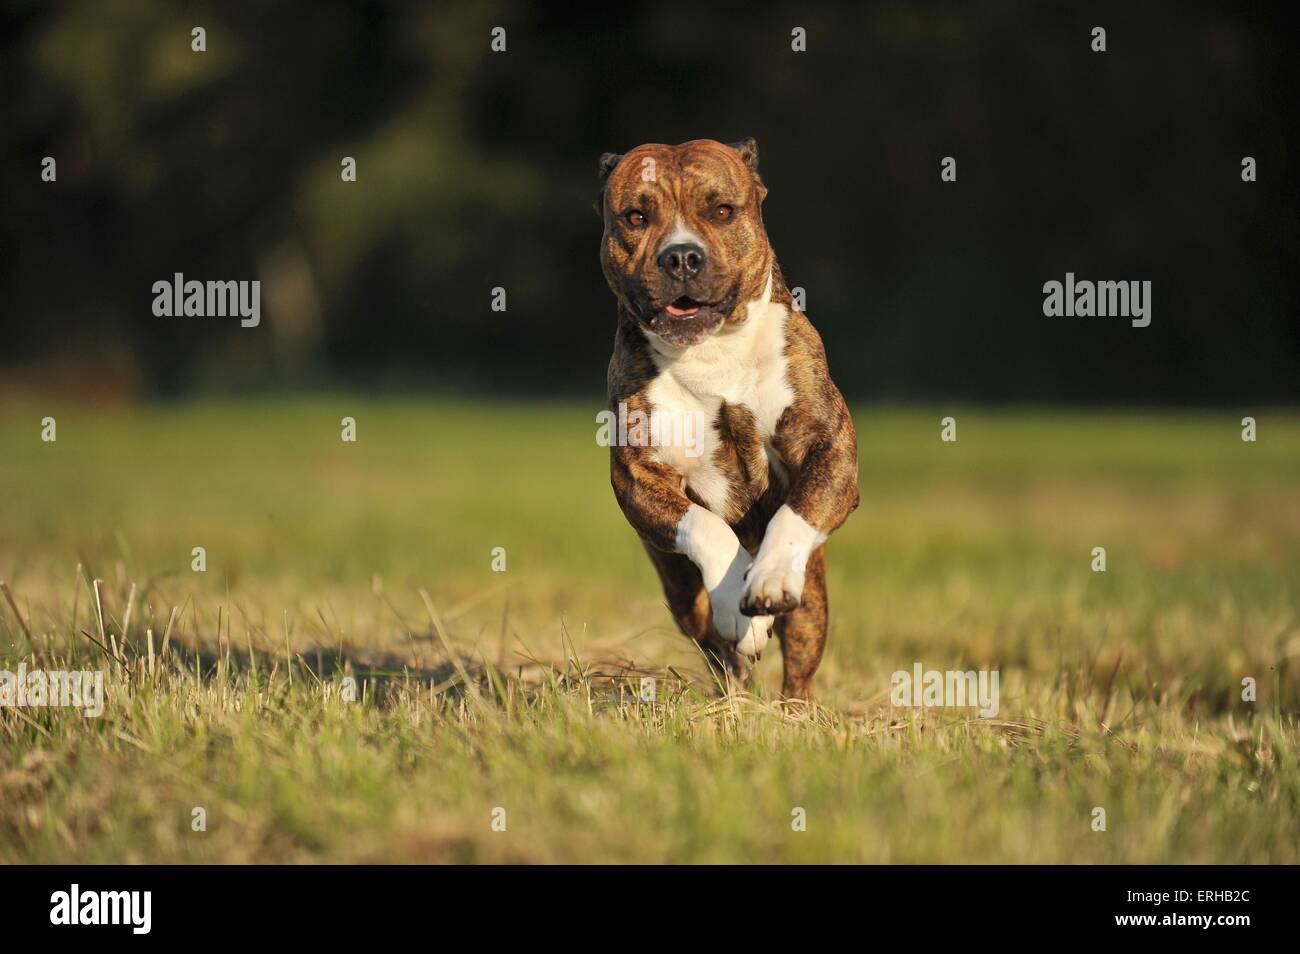 running Olde English Bulldog Stock Photo